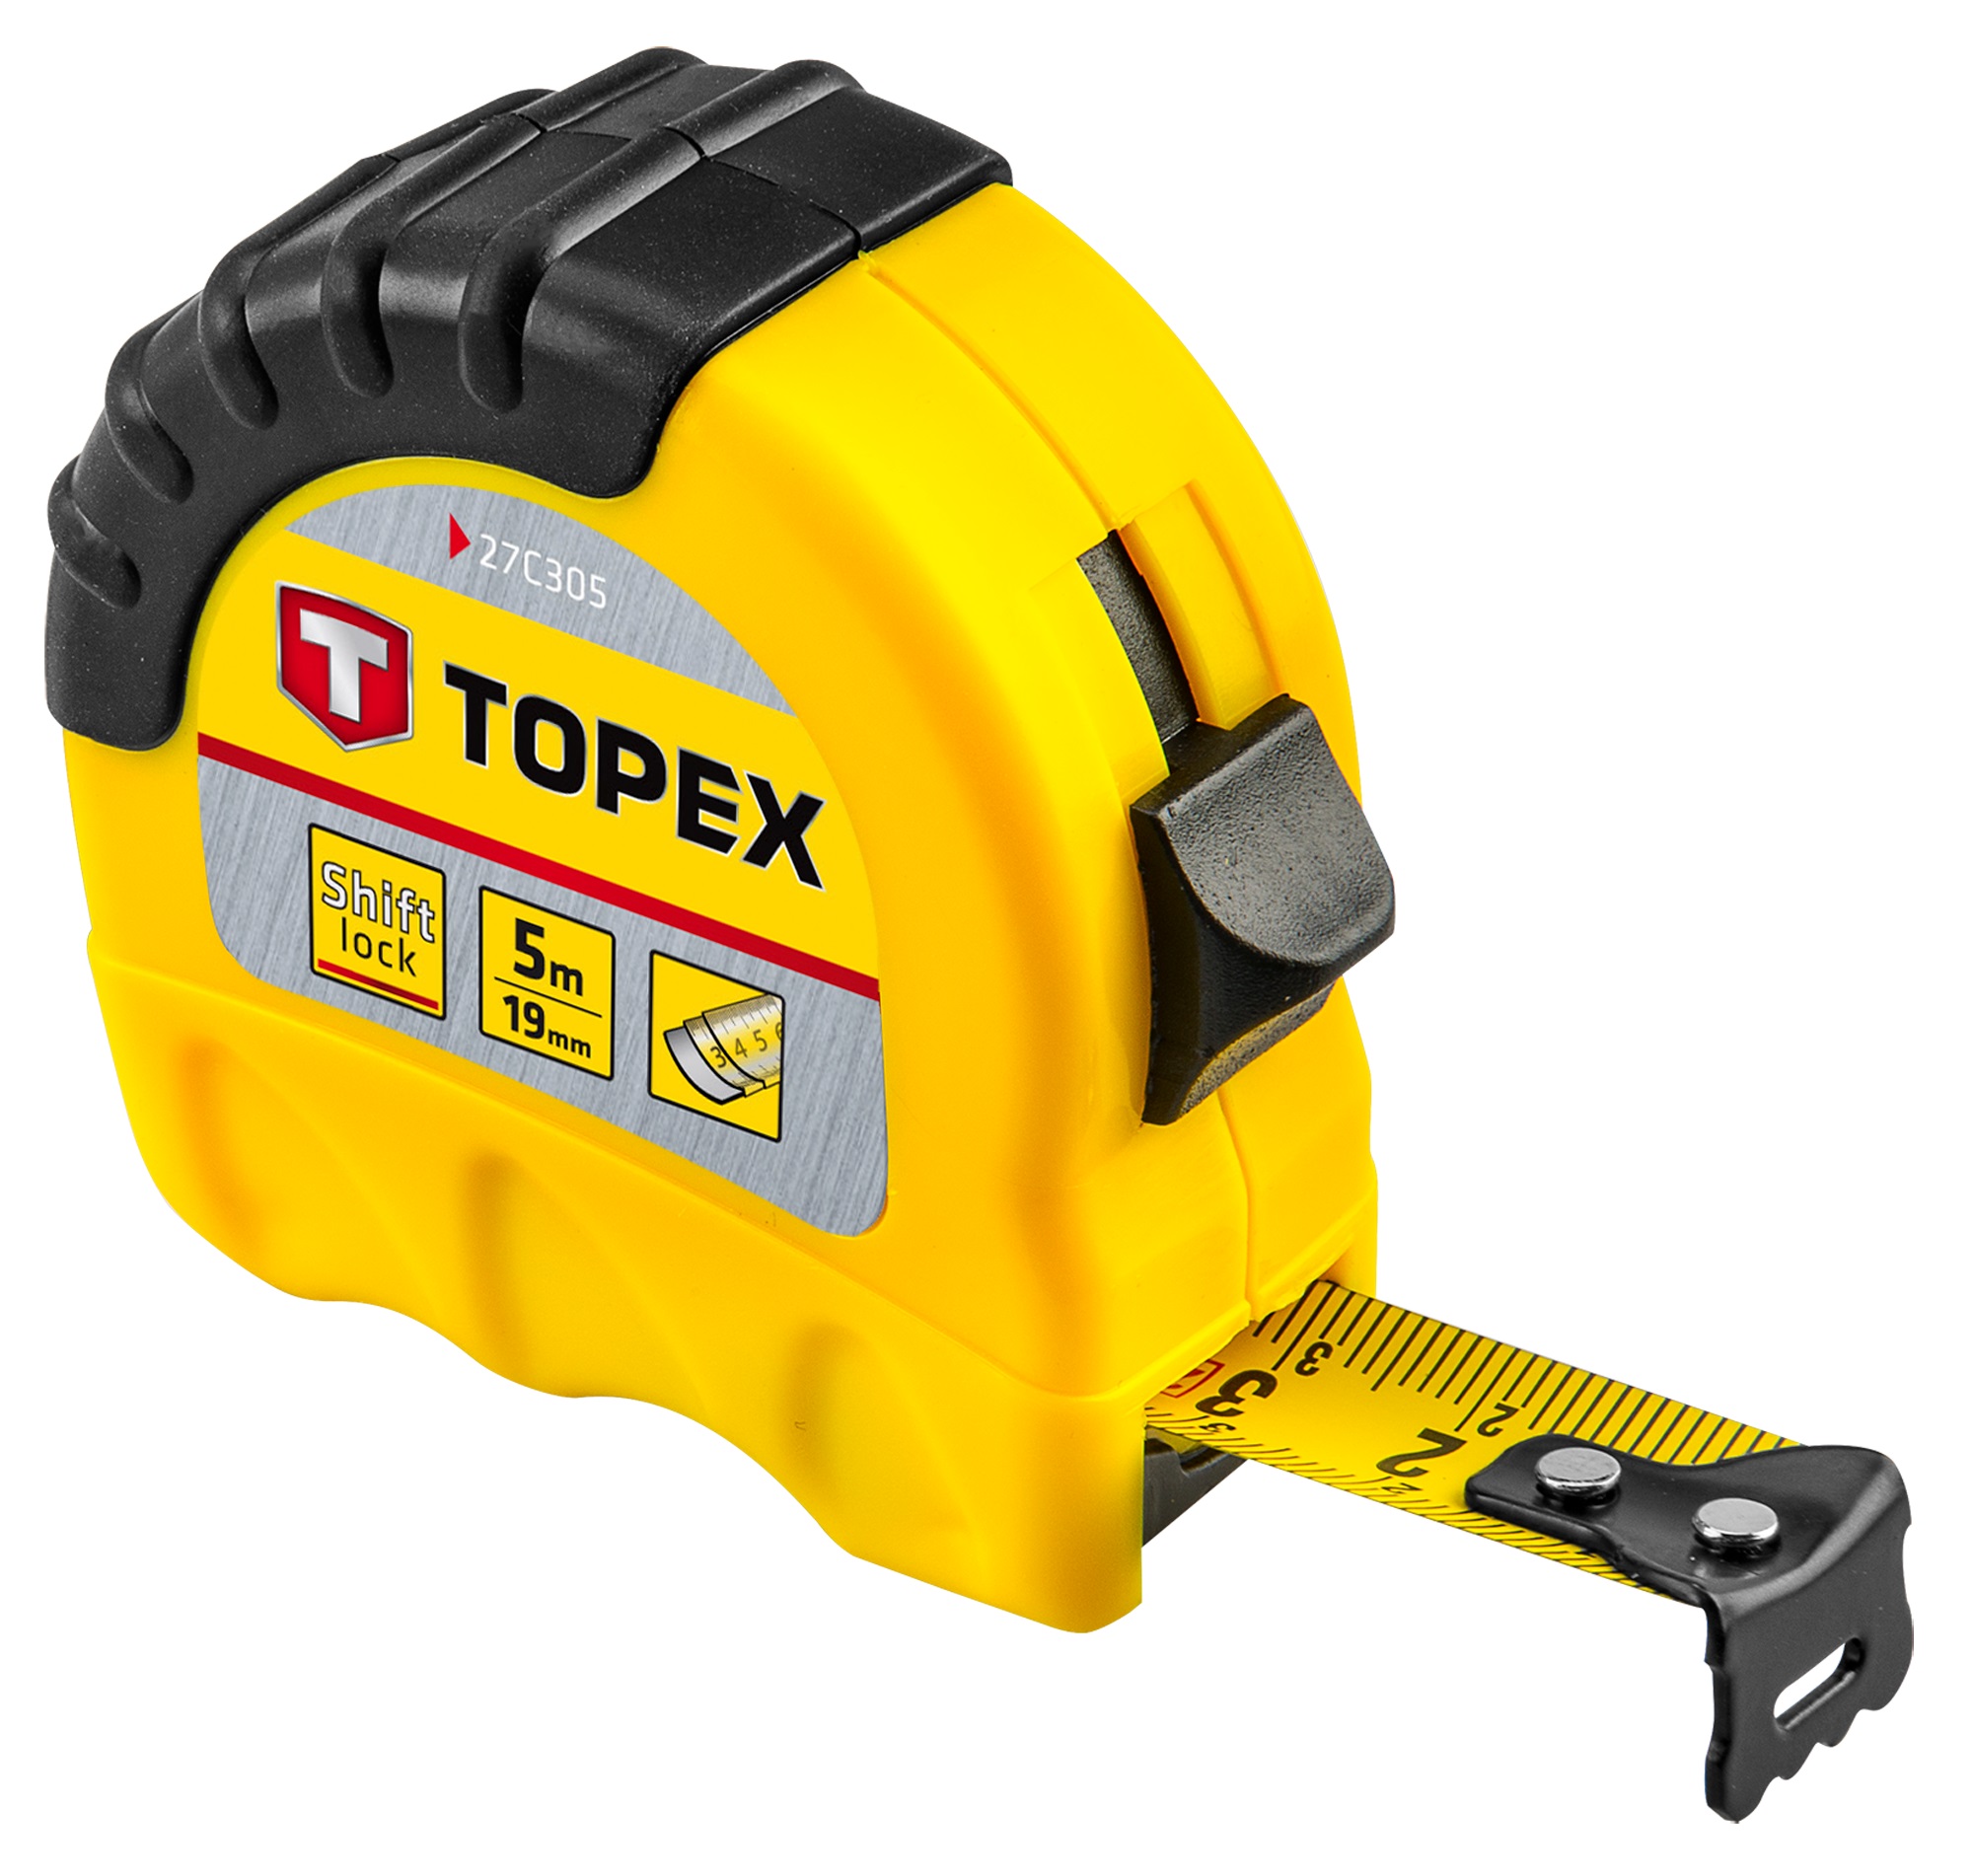 Характеристики рулетка Topex 27C305